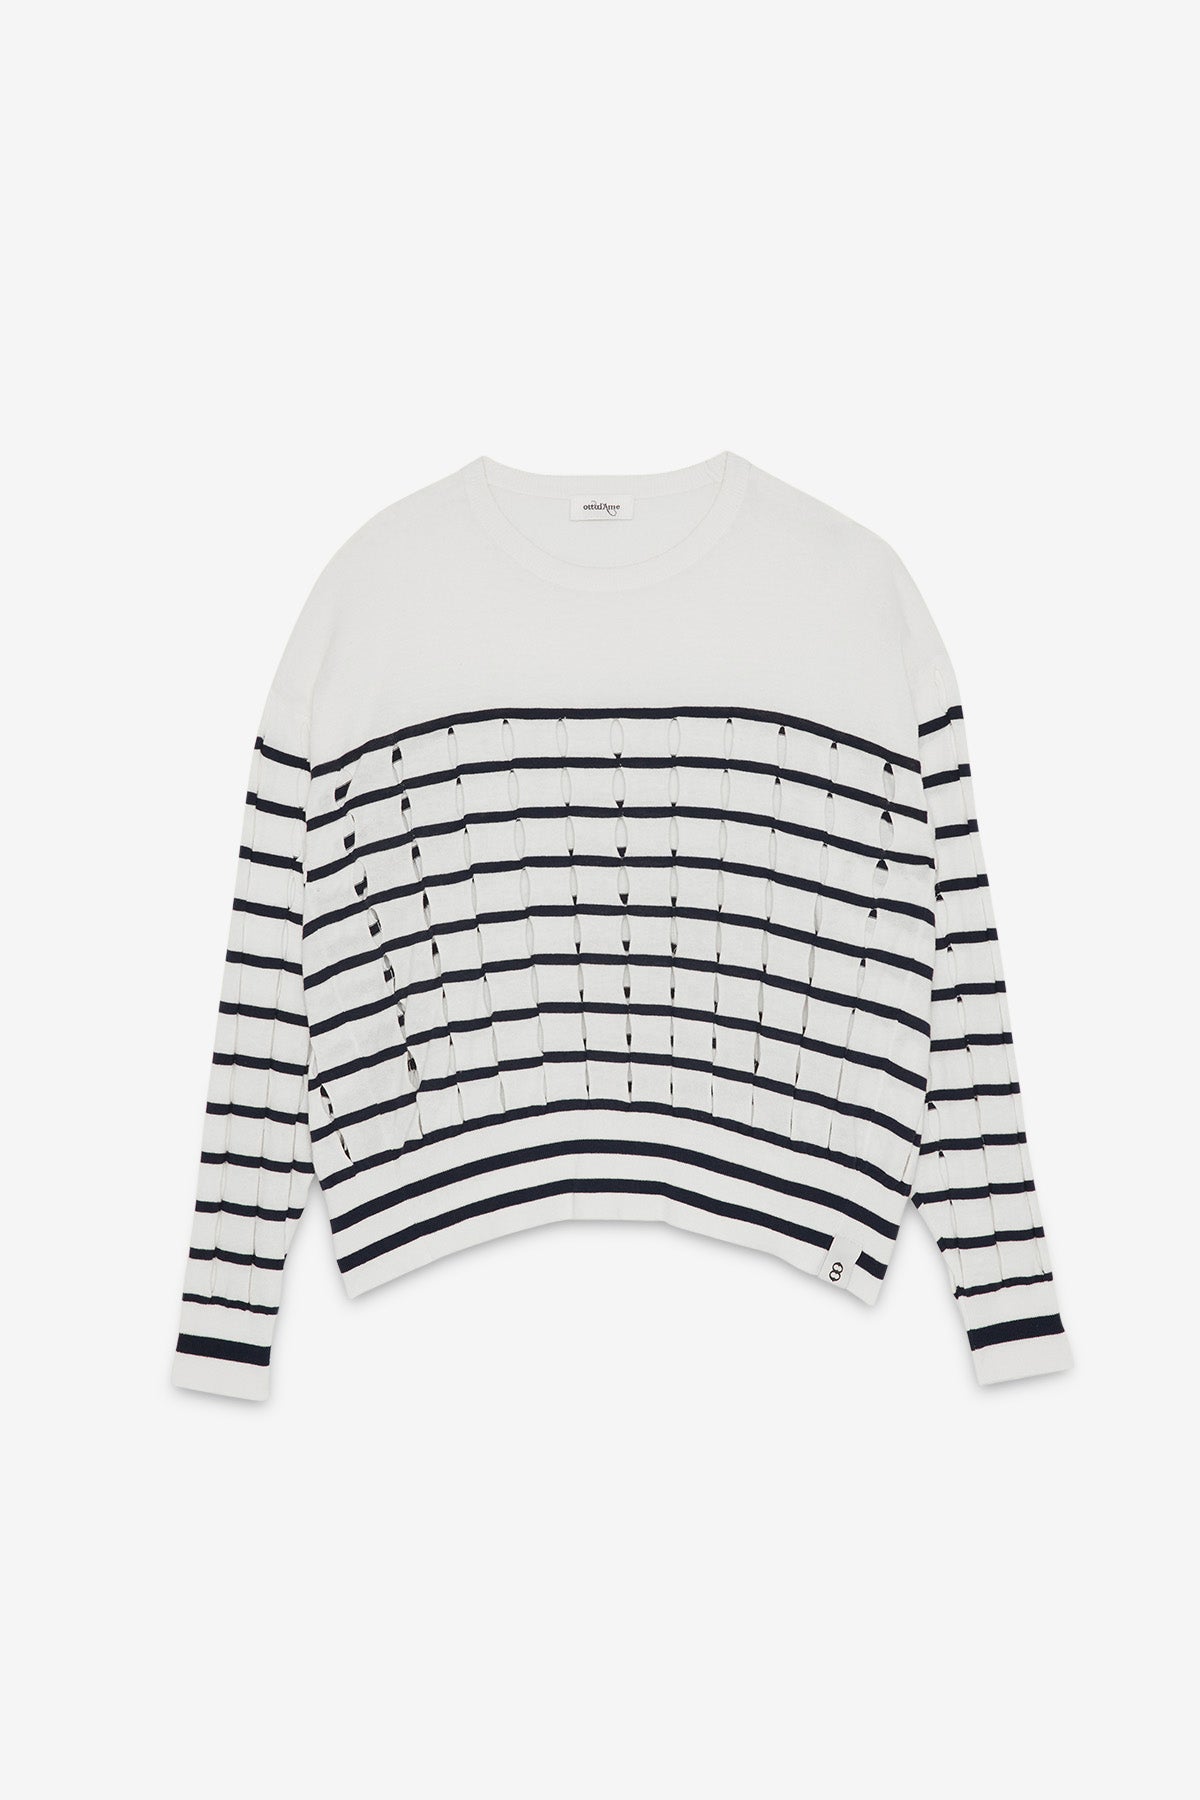 100% cotton fretworked sweater with round neckline